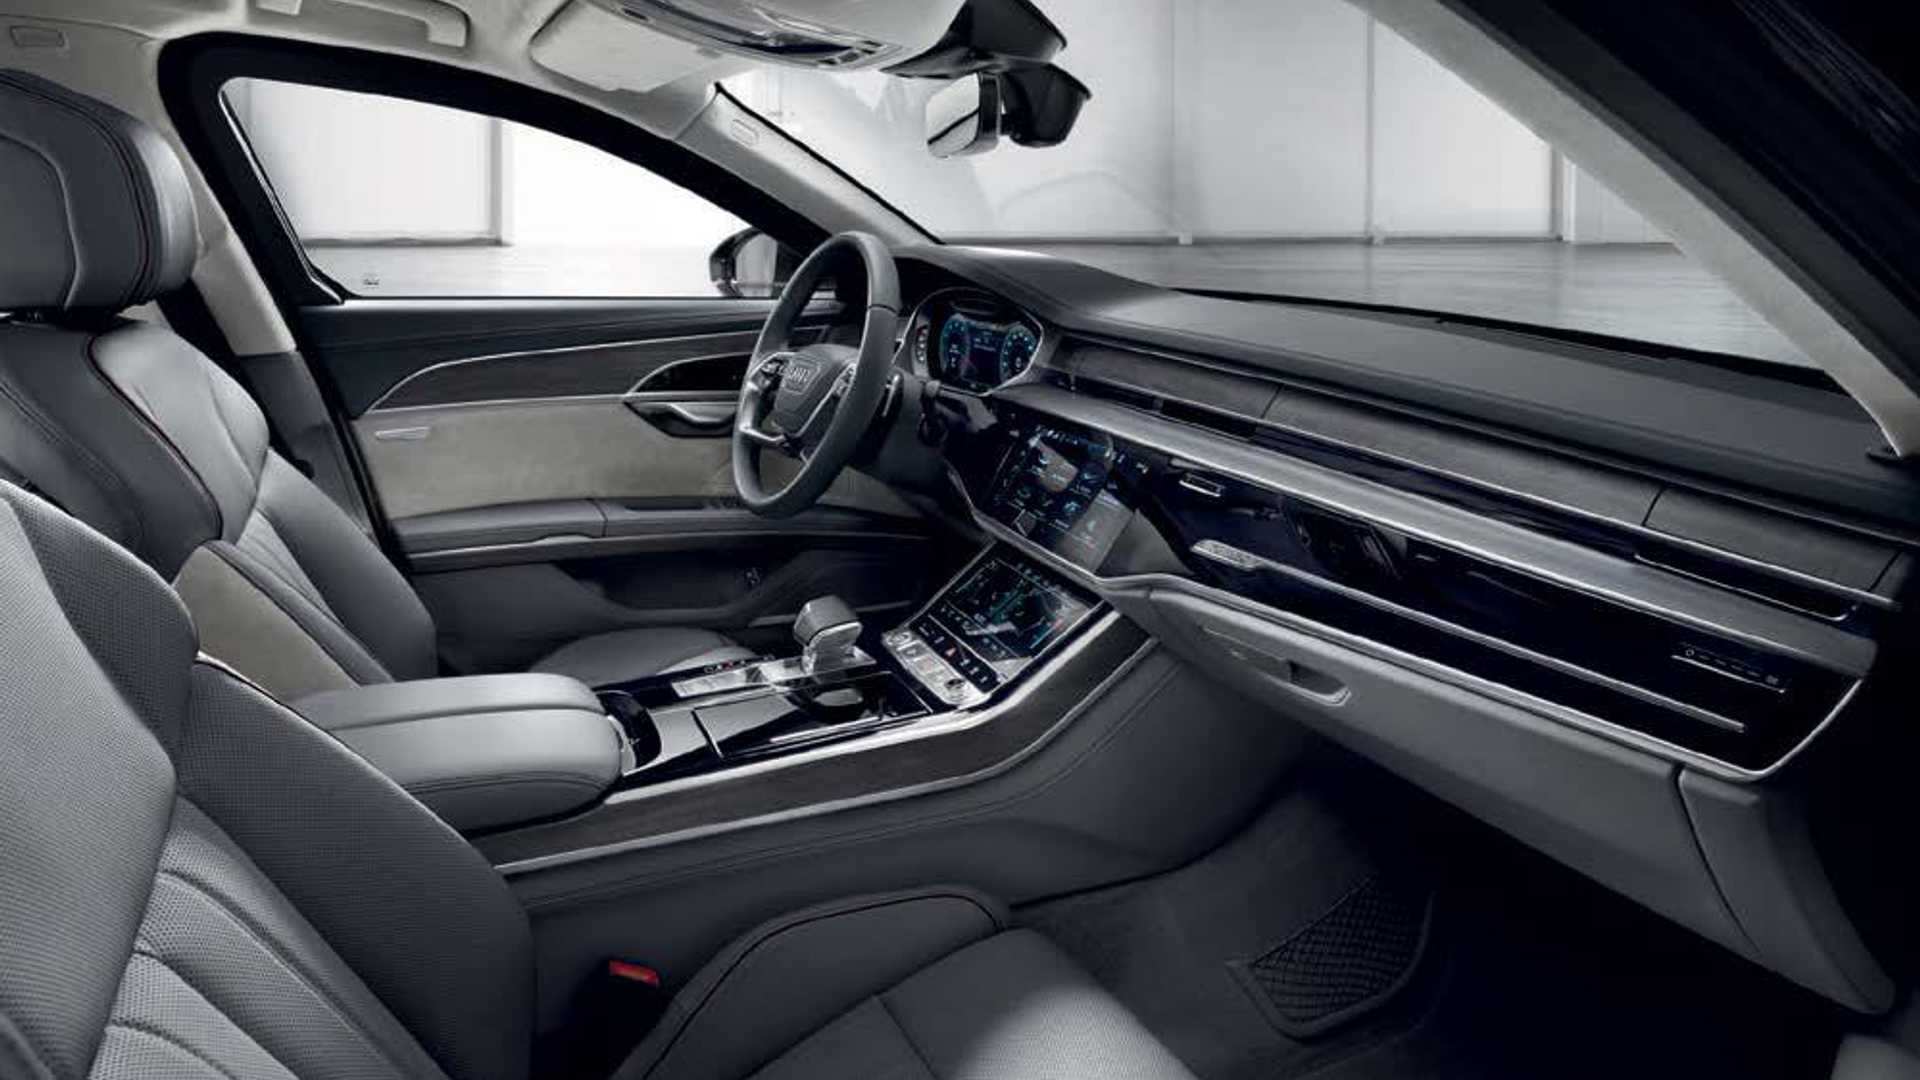 Ra mắt Audi A8 L Security: Bọc thép, khó cháy, chống đạn, khử độc, bảo vệ khách VIP - Ảnh 3.